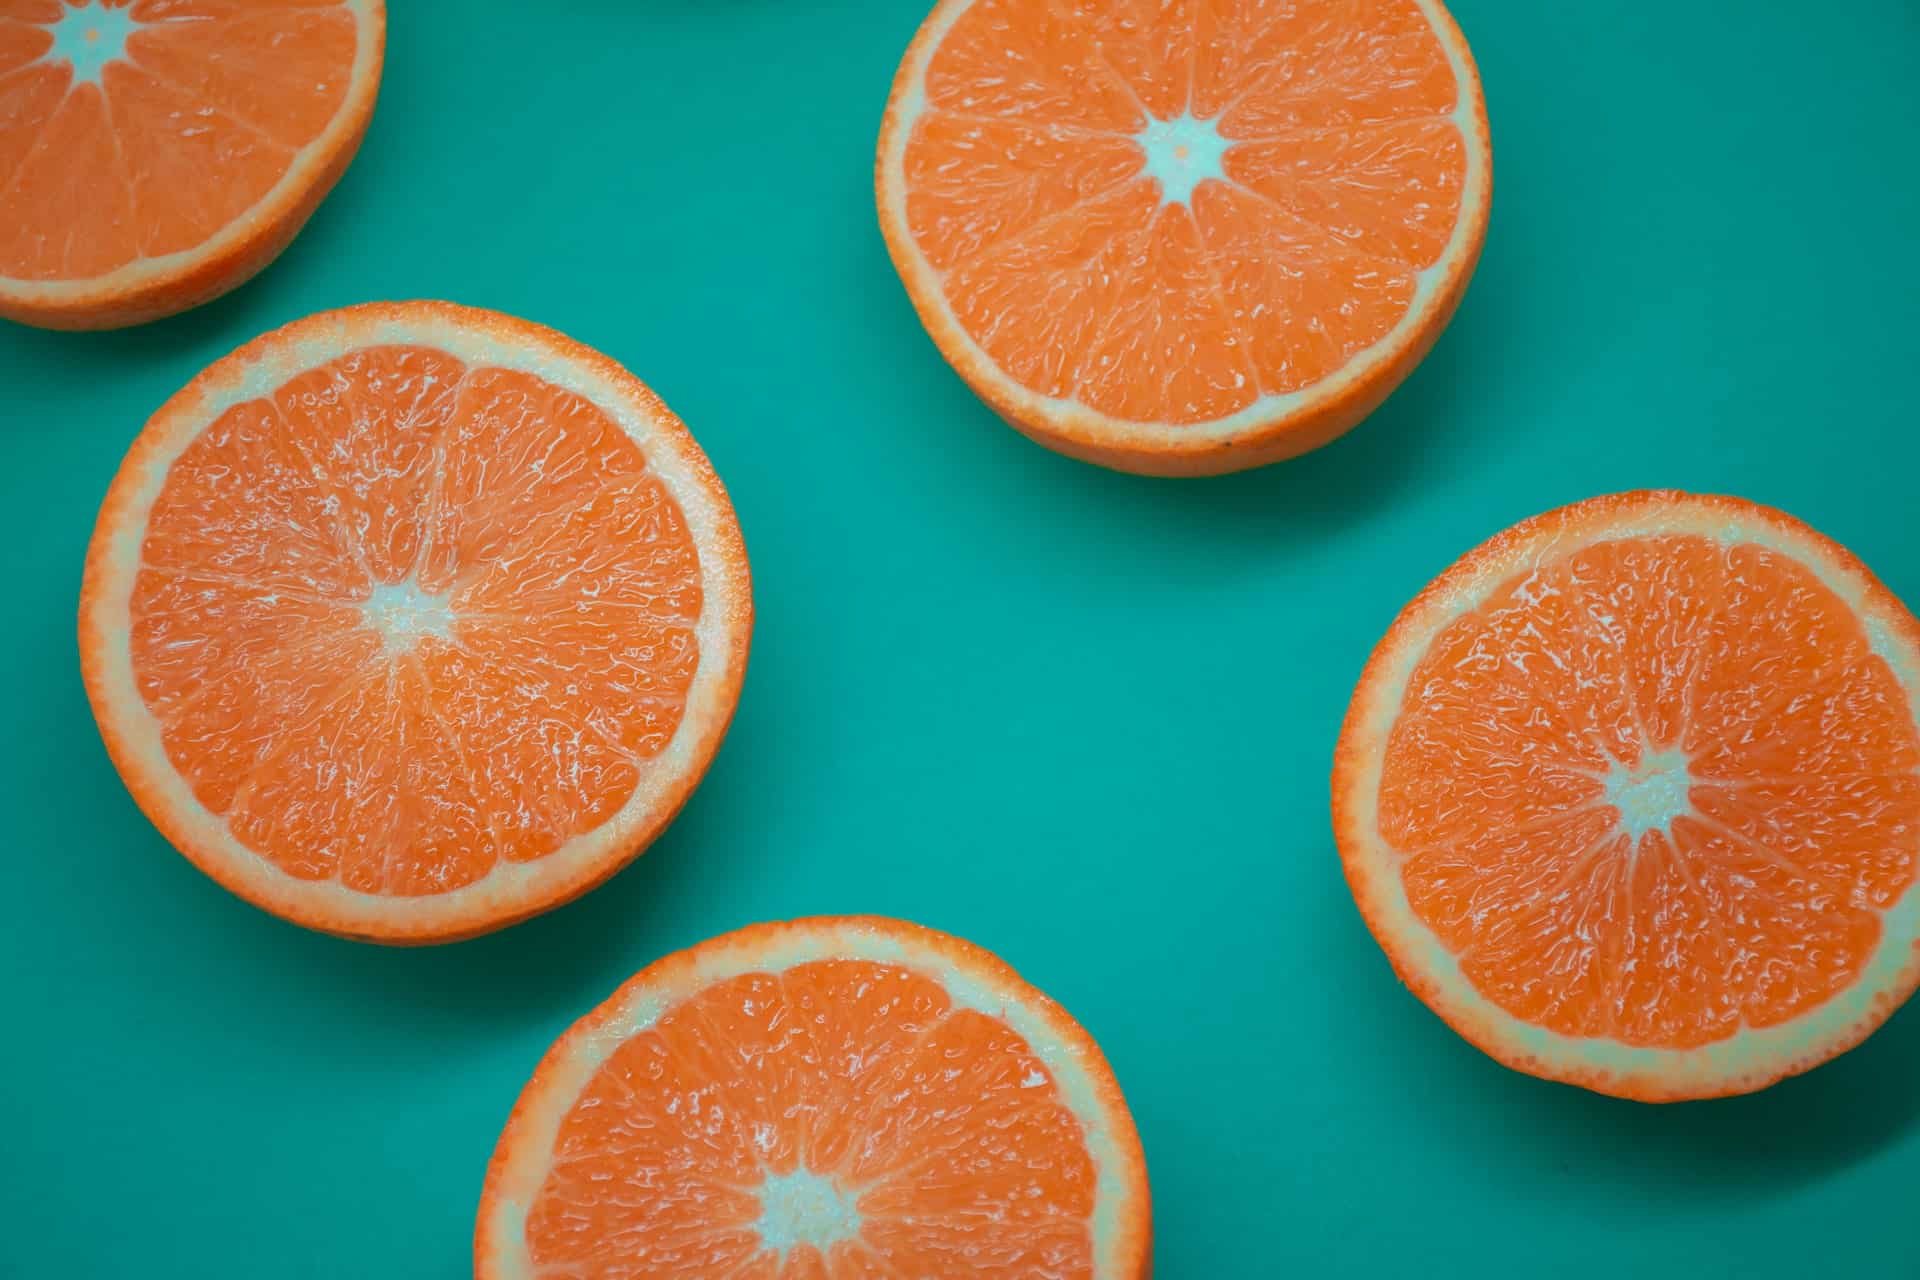 foods for gum health - sliced oranges